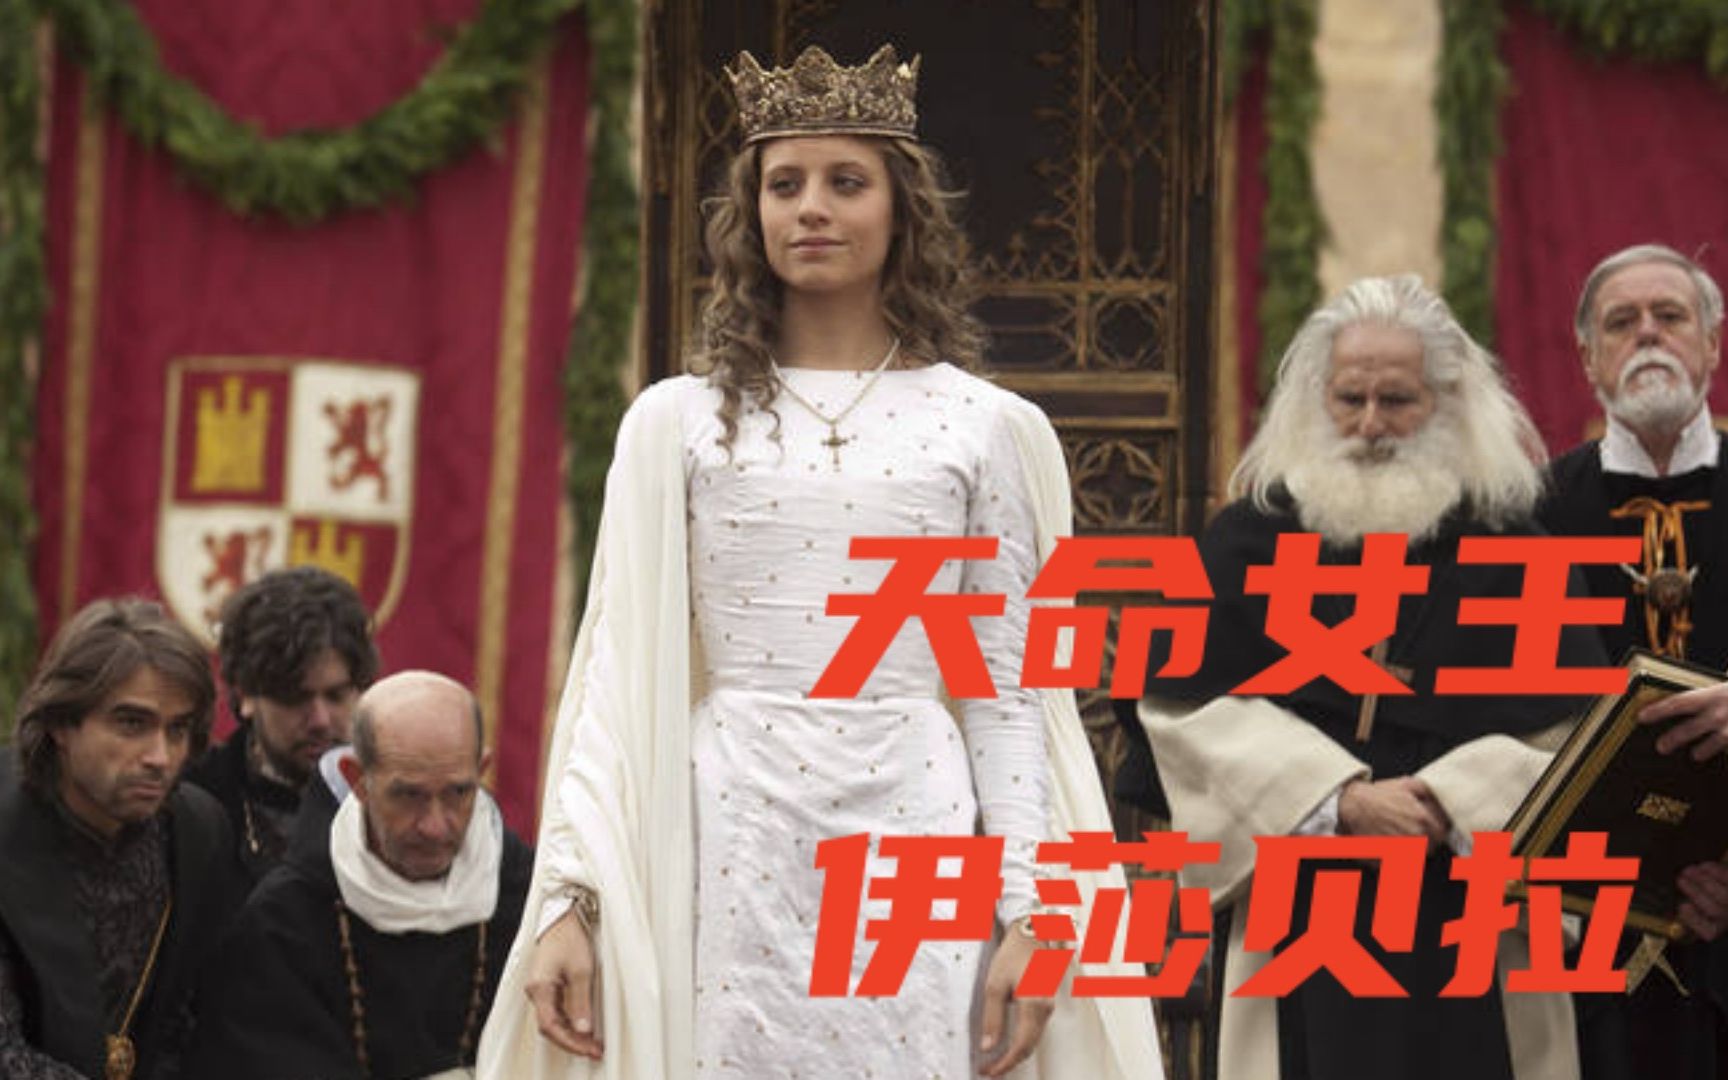 带领西班牙走向统一与强盛的传奇女王《伊莎贝拉》。第一季